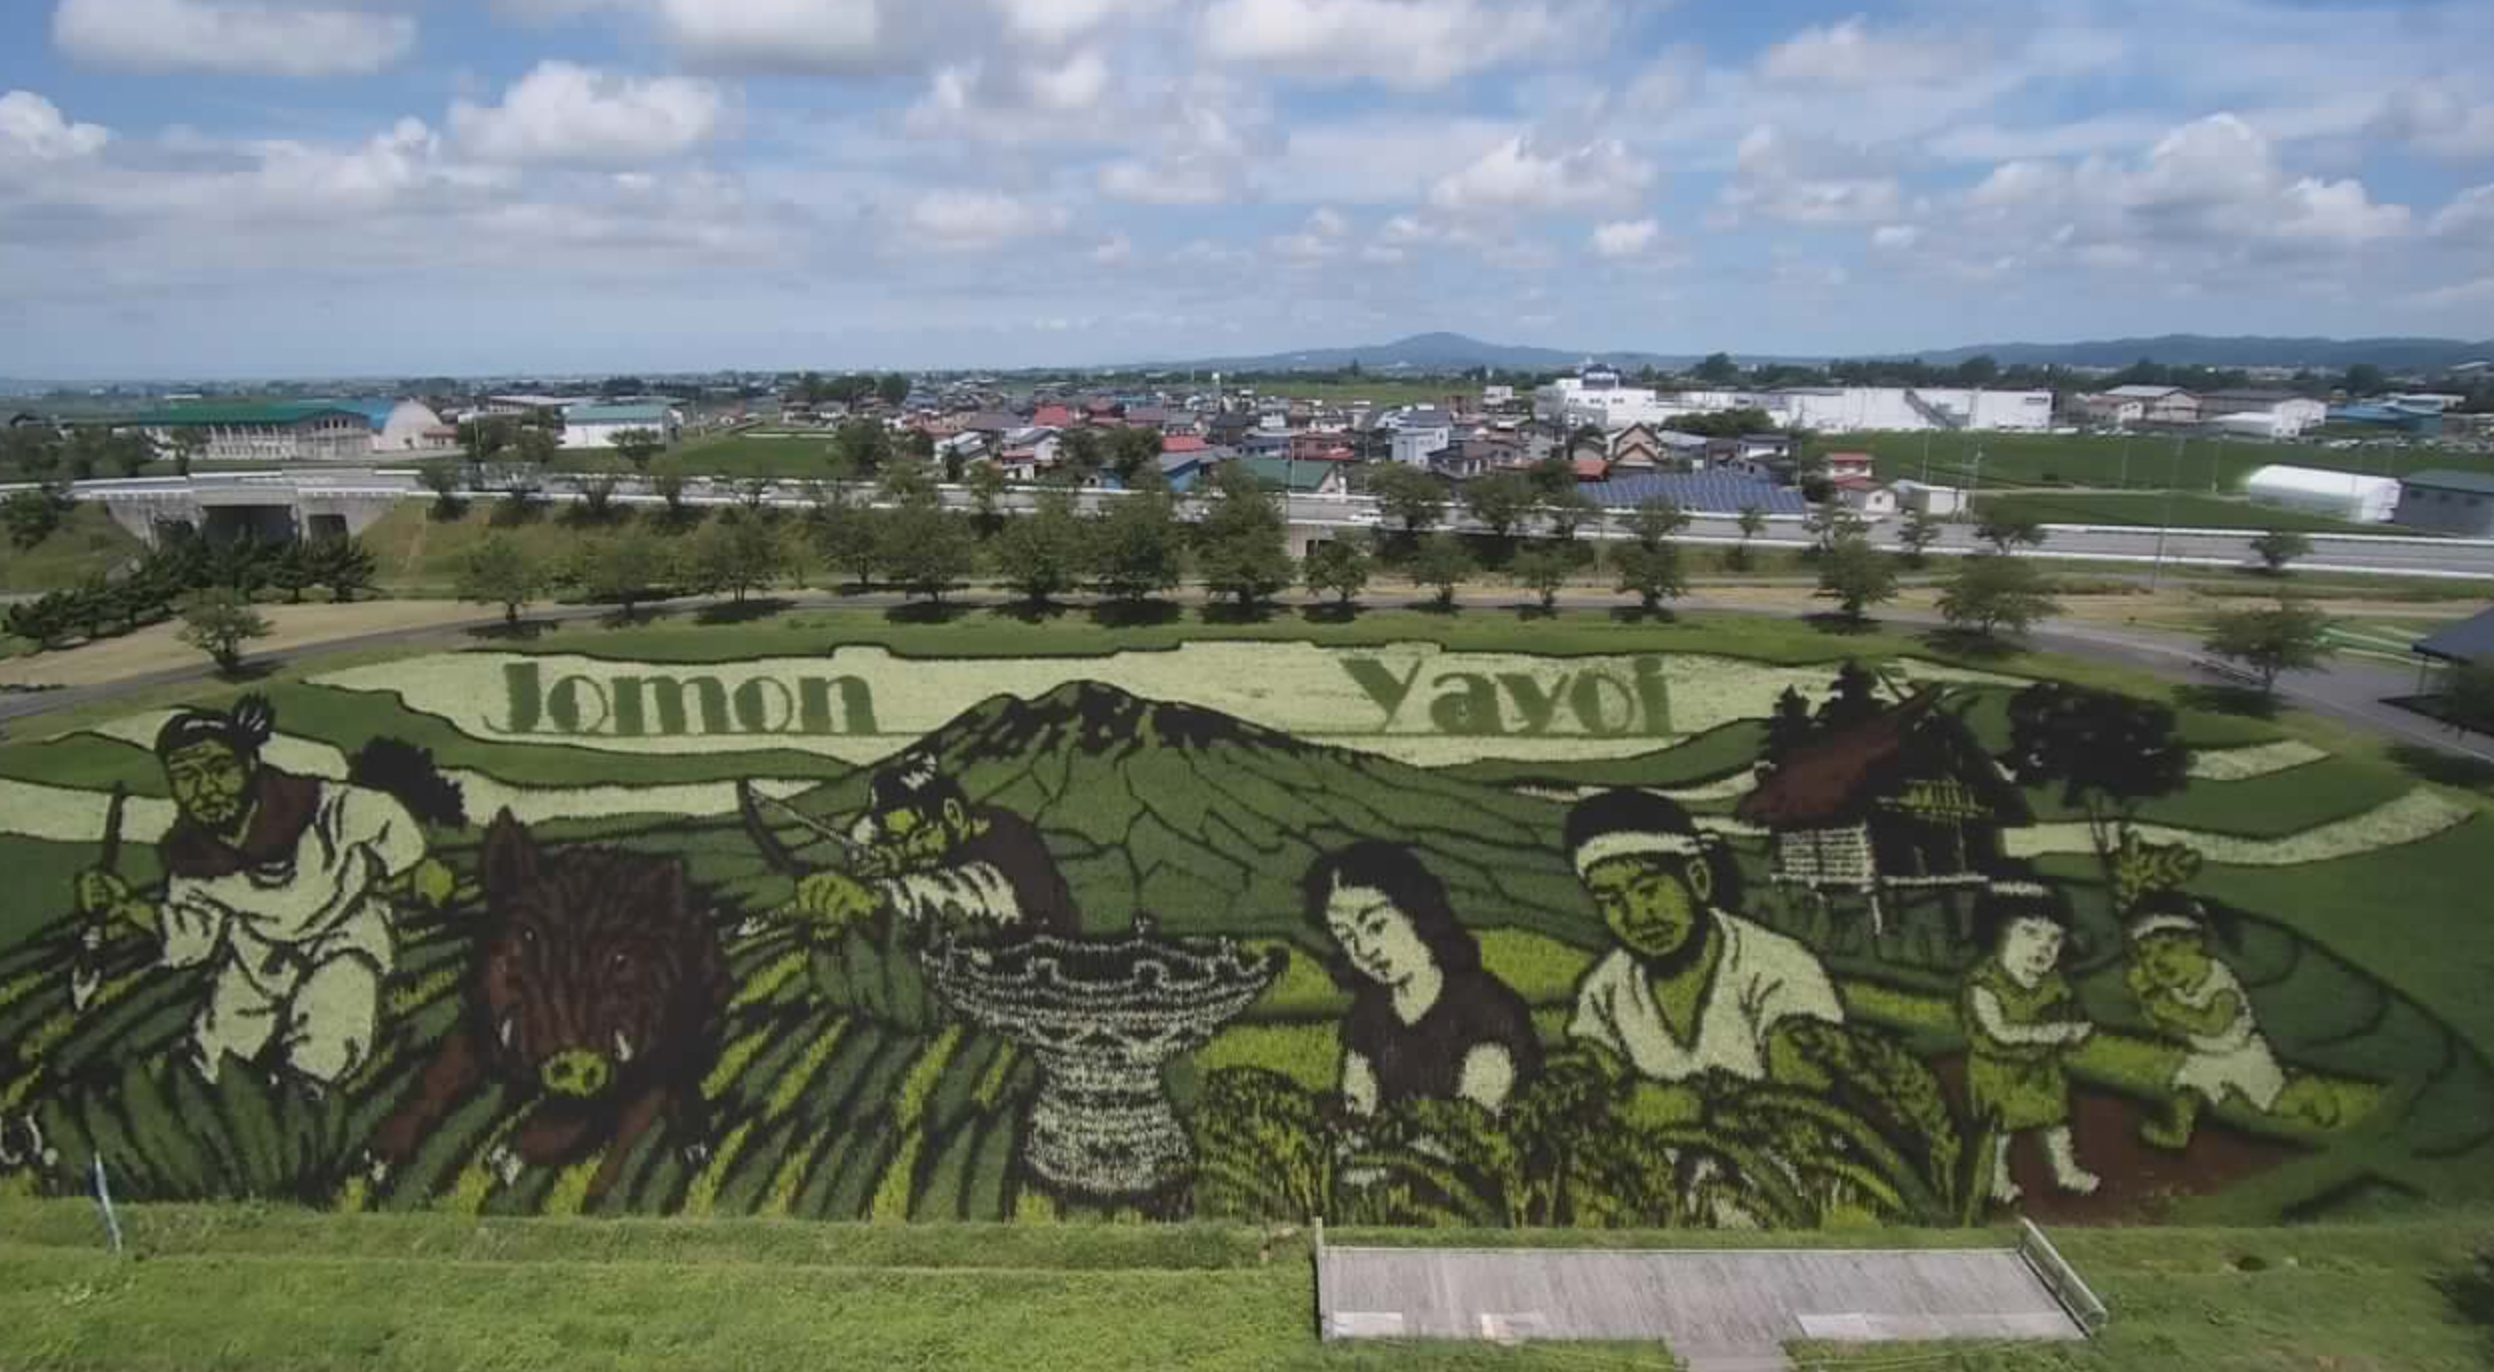 Das Jomon-Yayoi-Kunstwerk am 28. Juli 2022.